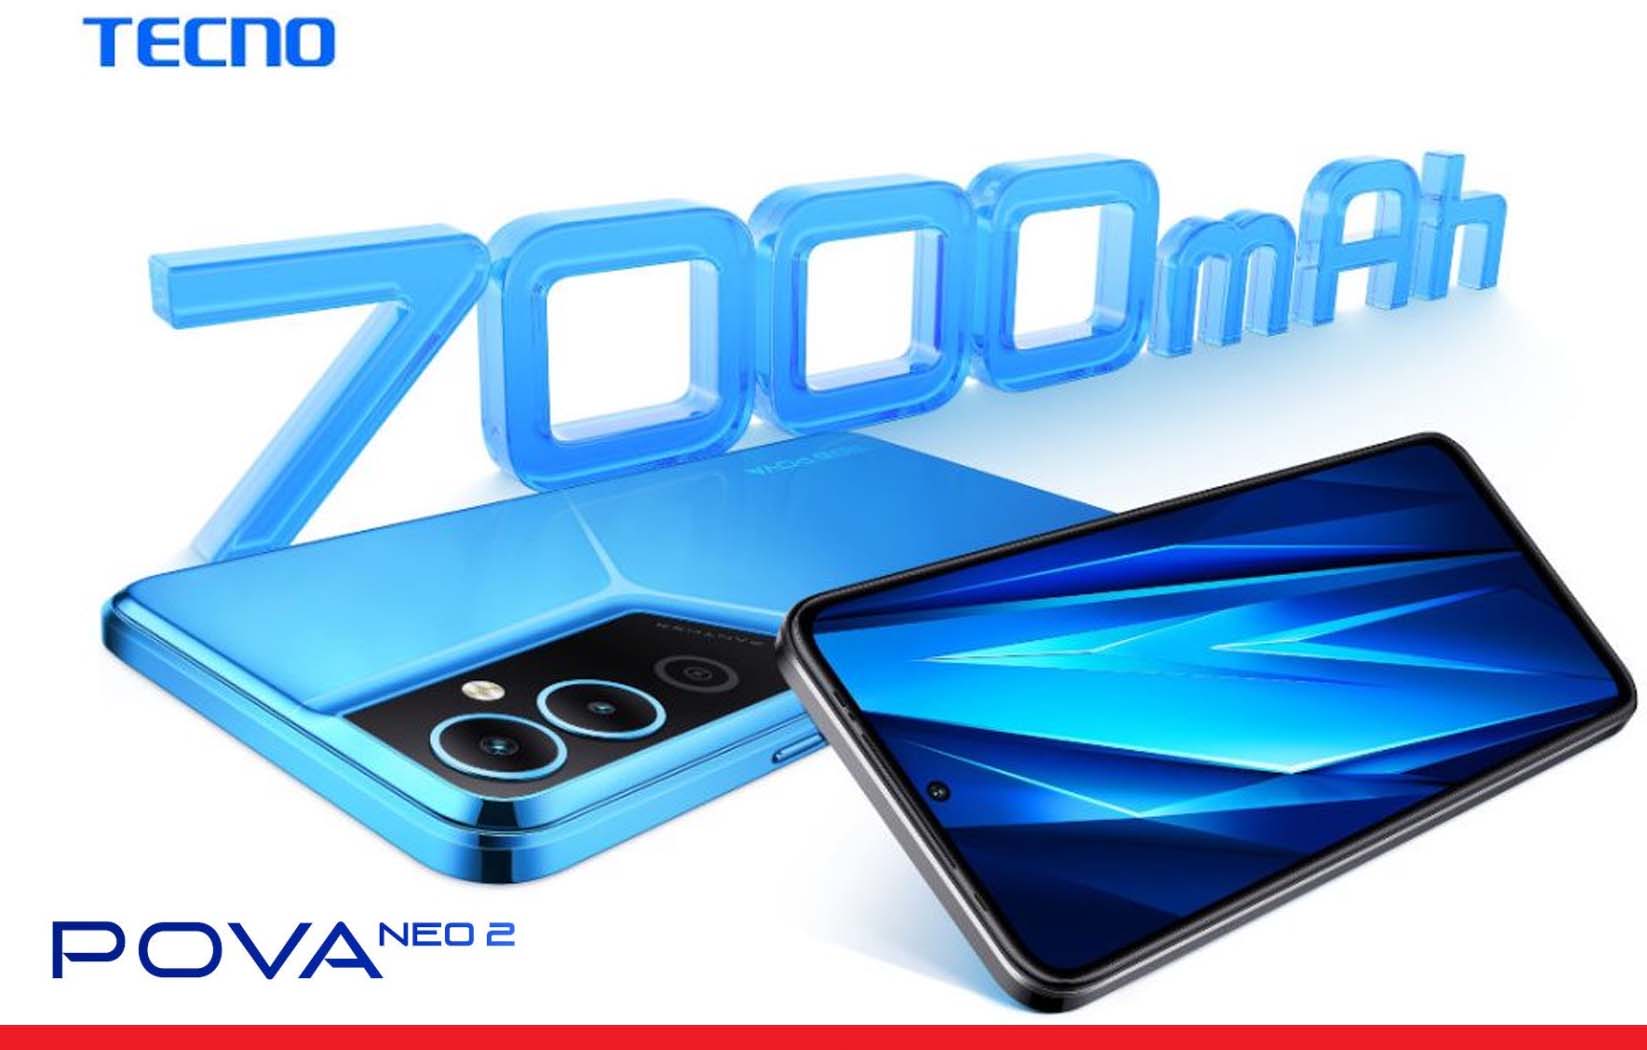 7000mAh बैटरी के साथ लॉन्च हुआ टेक्नो पोवा Neo 2 एंड्रॉयड स्मार्टफोन 